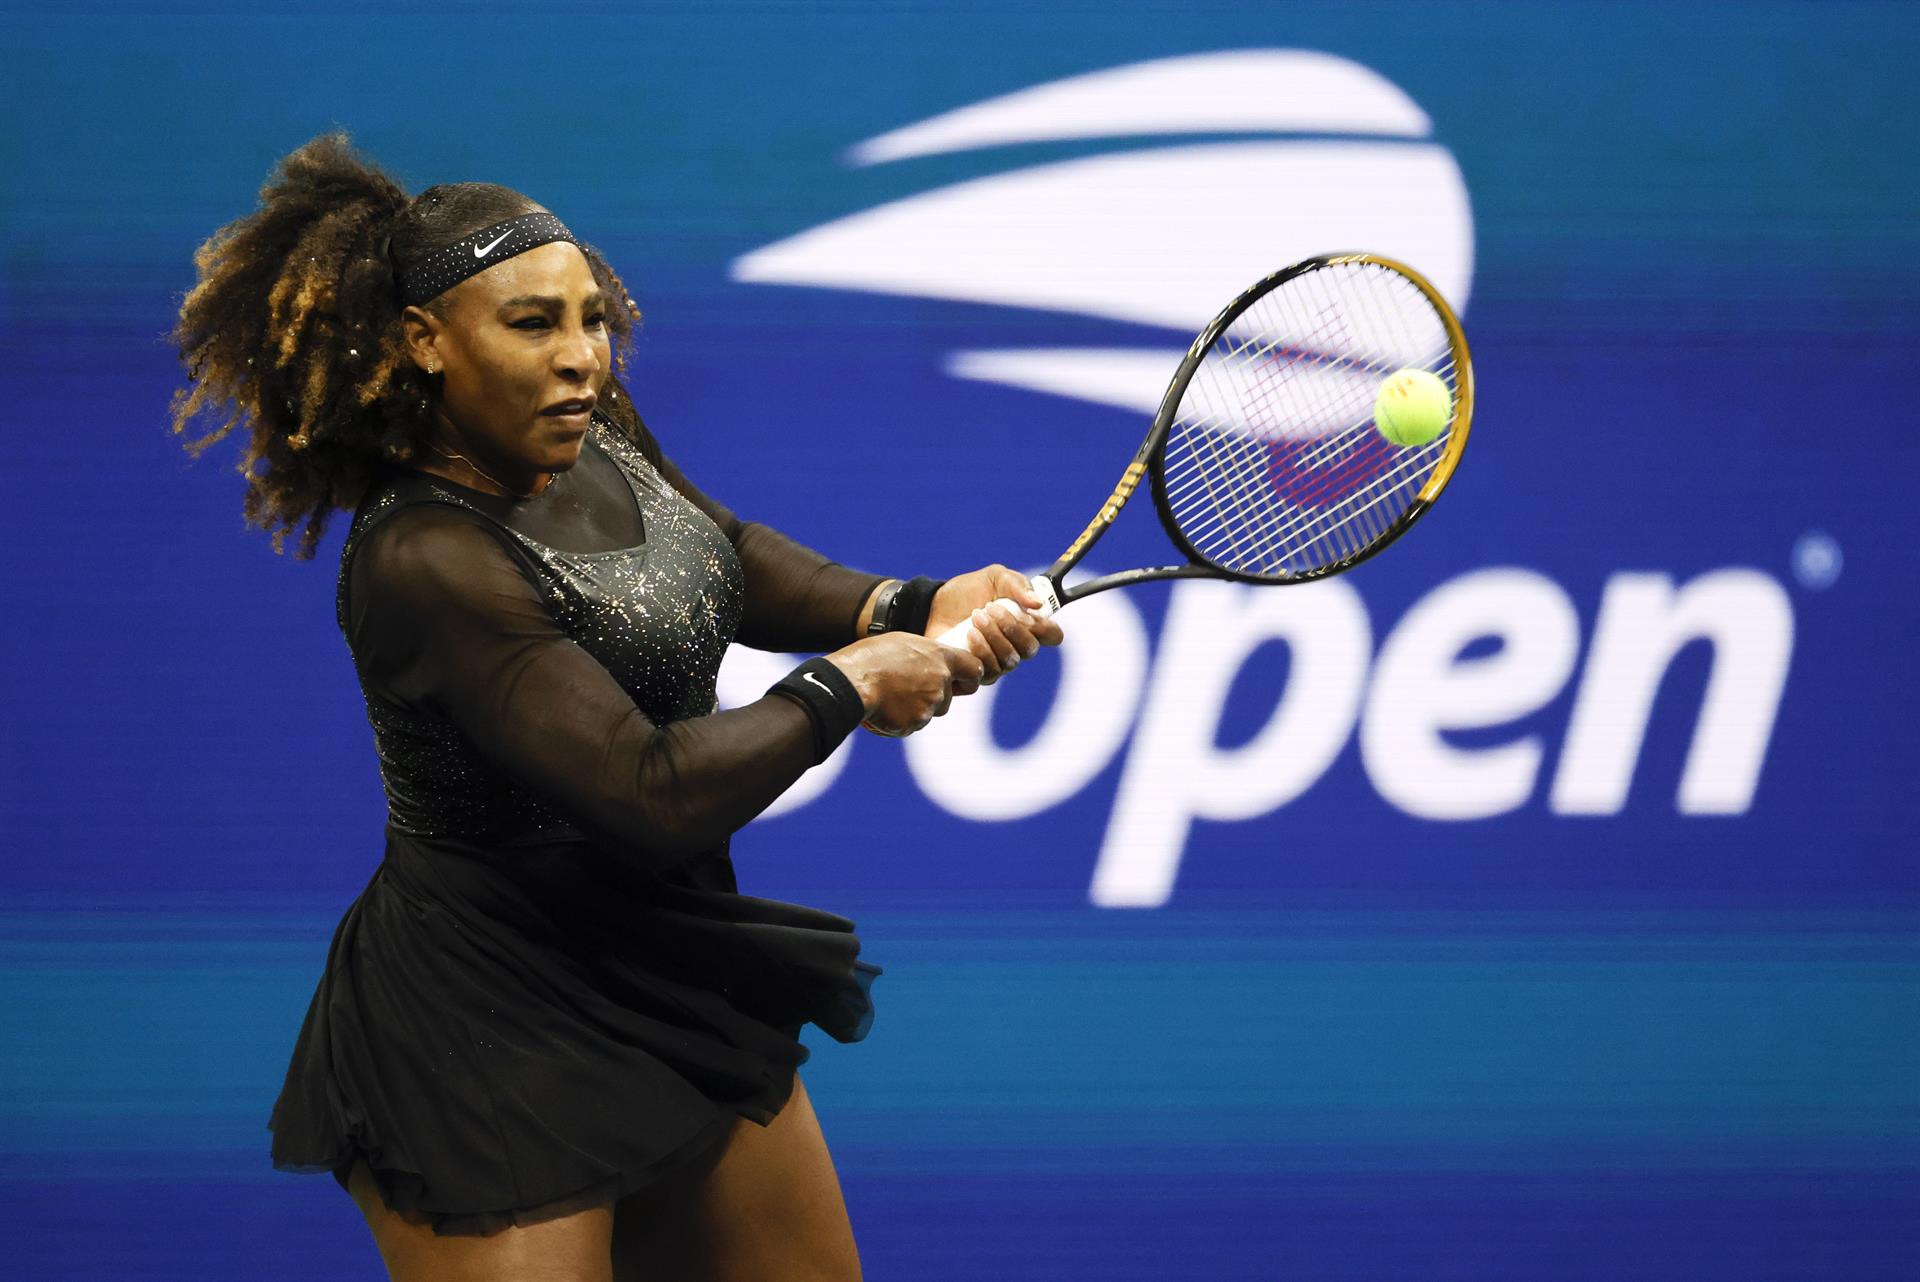 Serena Williams participa en su último Abierto de EE.UU., en una fotografía de archivo. EFE/Jason Szenes
